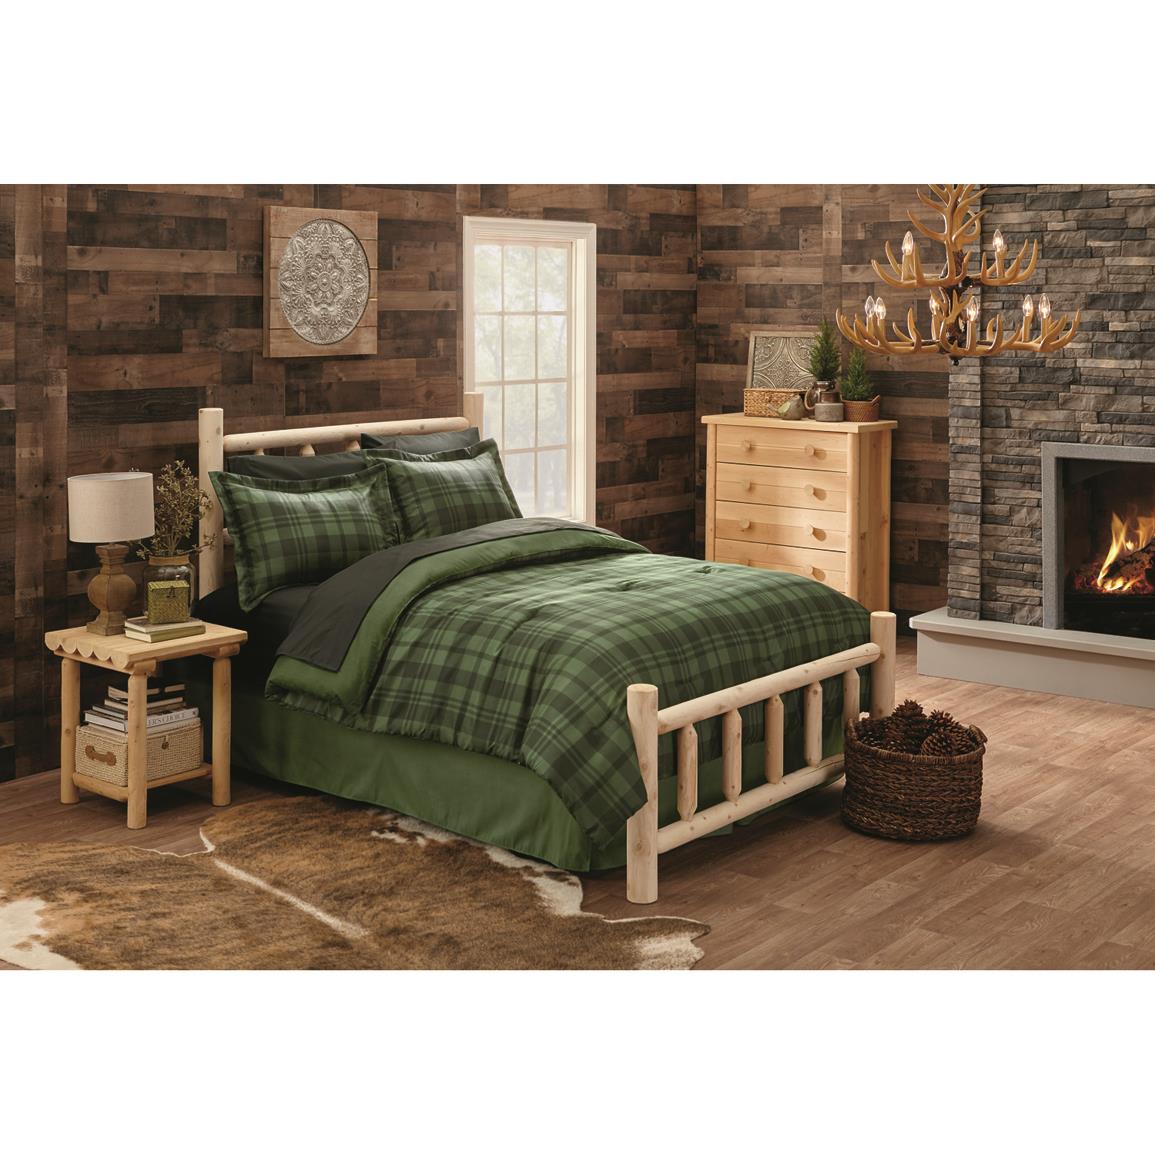 Castlecreek Cedar Log Bed King, Log King Bed Set